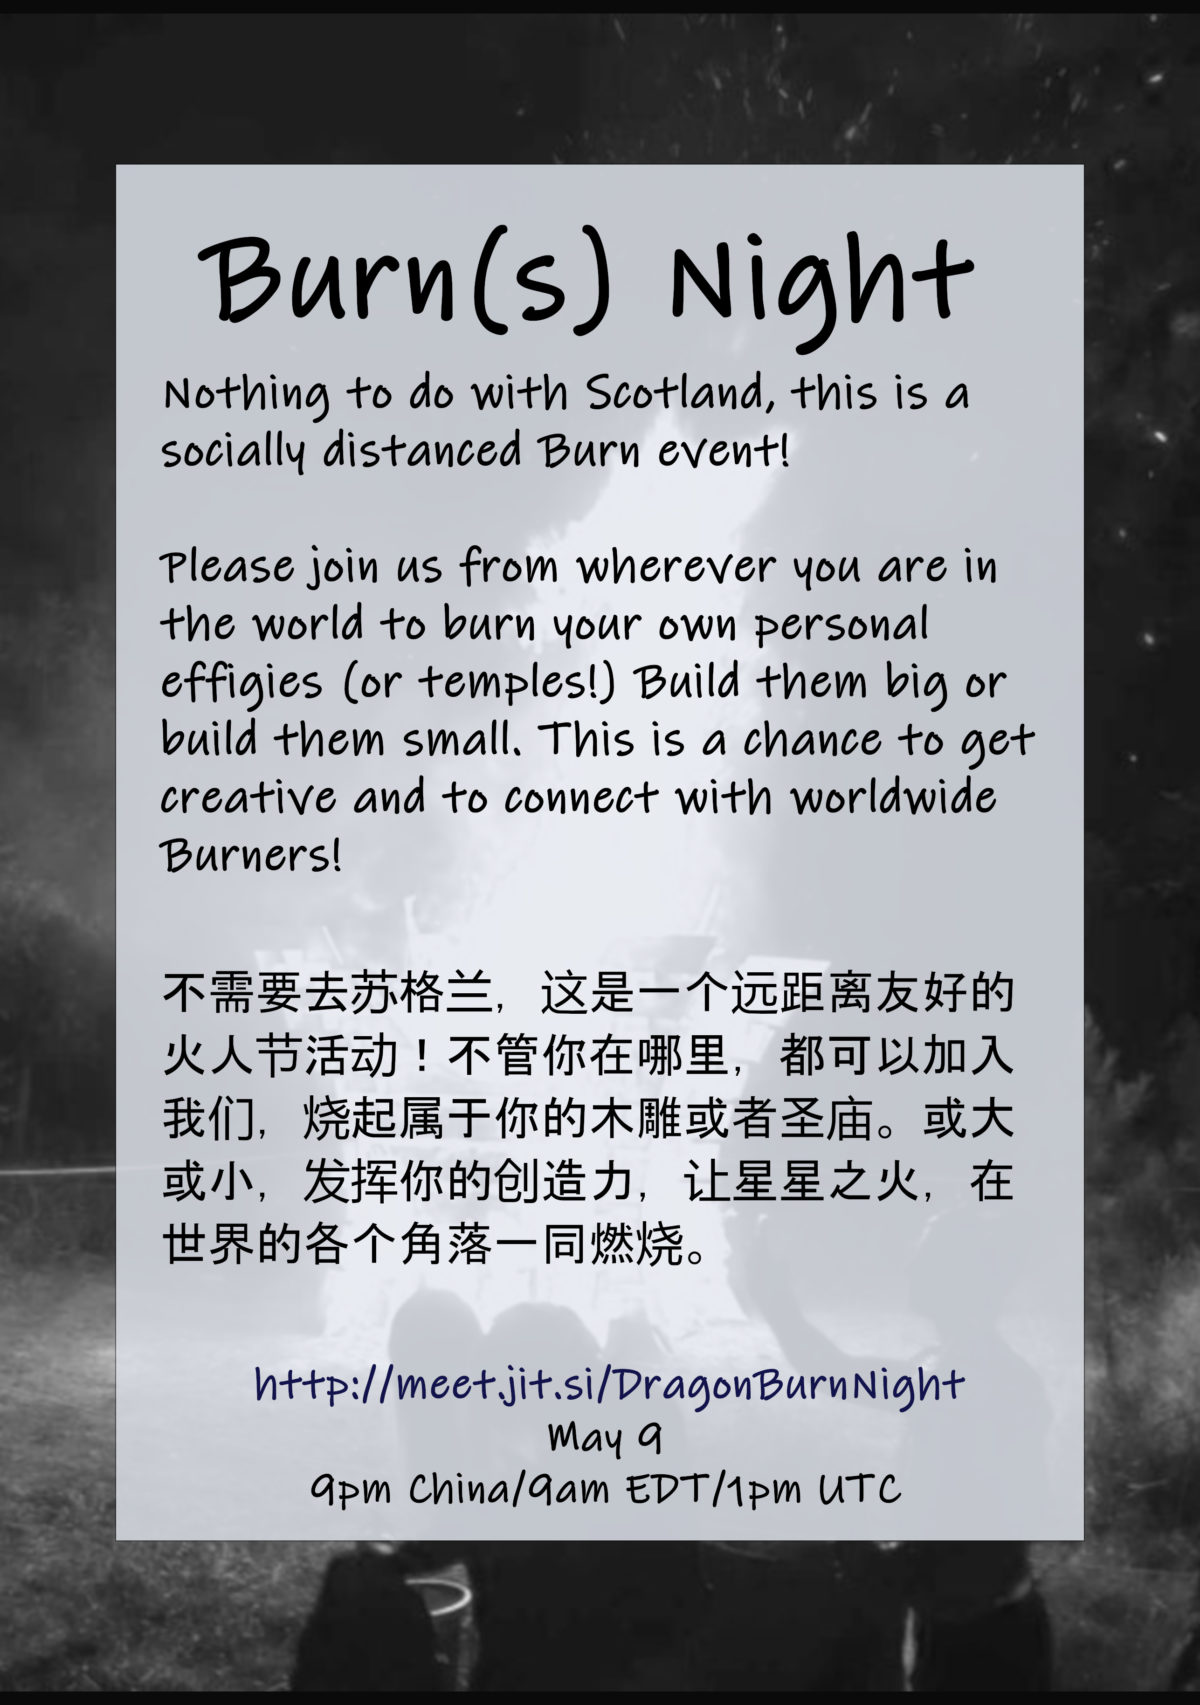 Burn(s) Night